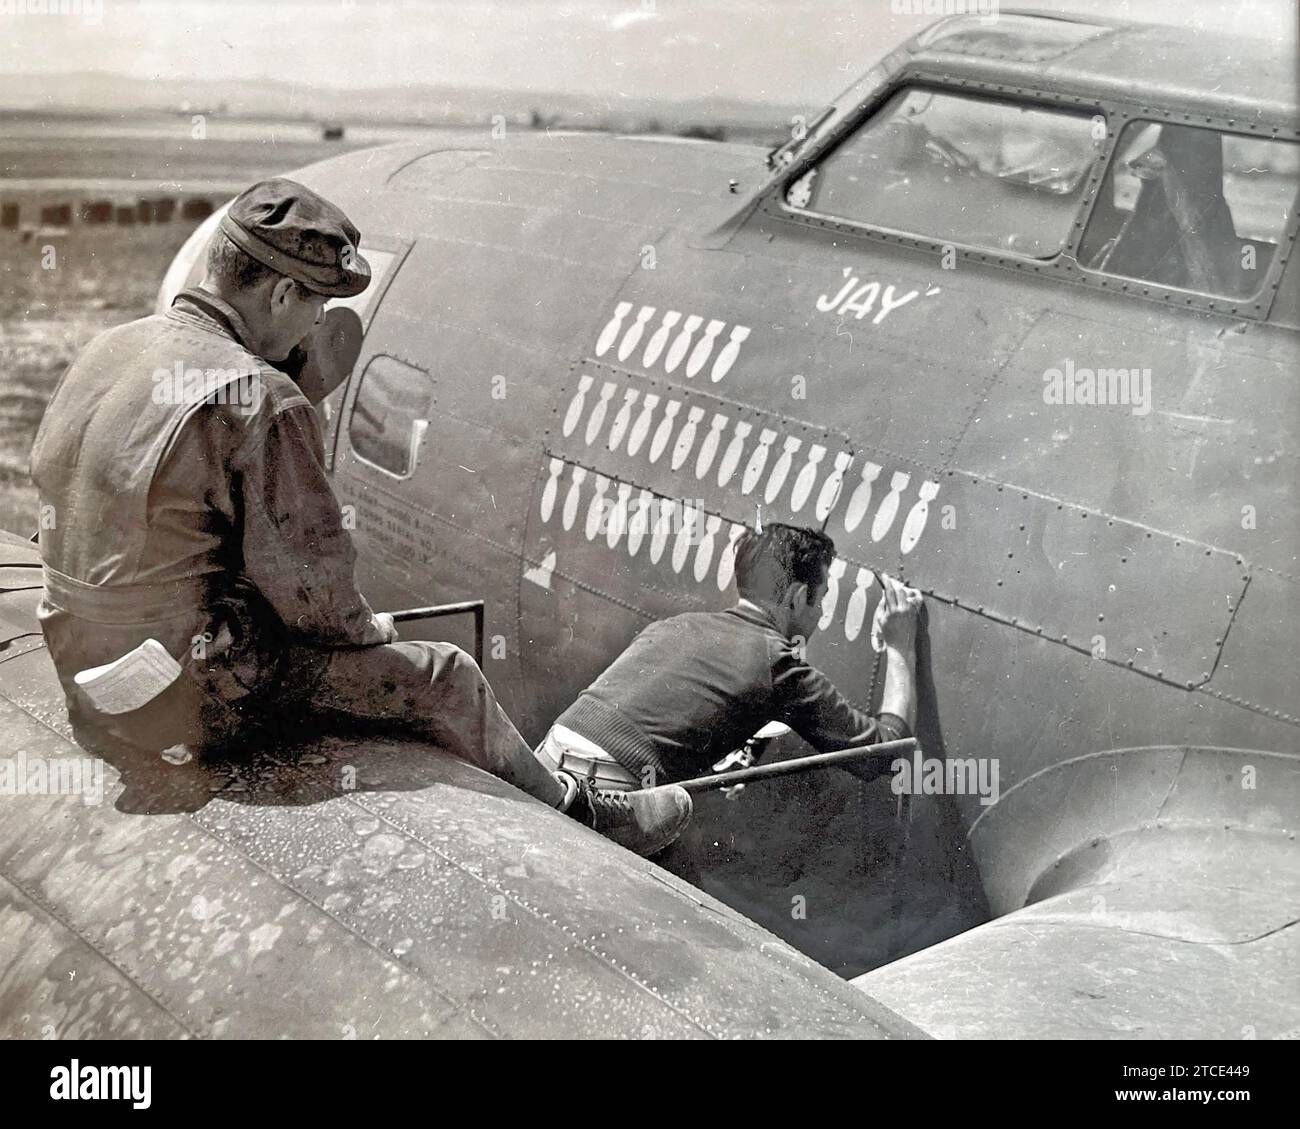 Un membre d'équipage d'un B-17 Bomb Group de l'USAAF basé en Afrique du Nord à l'été 1943 enregistre les 32 missions de bombardement réussies de son avion et un navire coulant sous le cockpit qui porte le nom chrétien Jay du pilote. Ailleurs sur le nez de l'avion est peint son surnom la Goon. Photo : Robert CAPA Banque D'Images